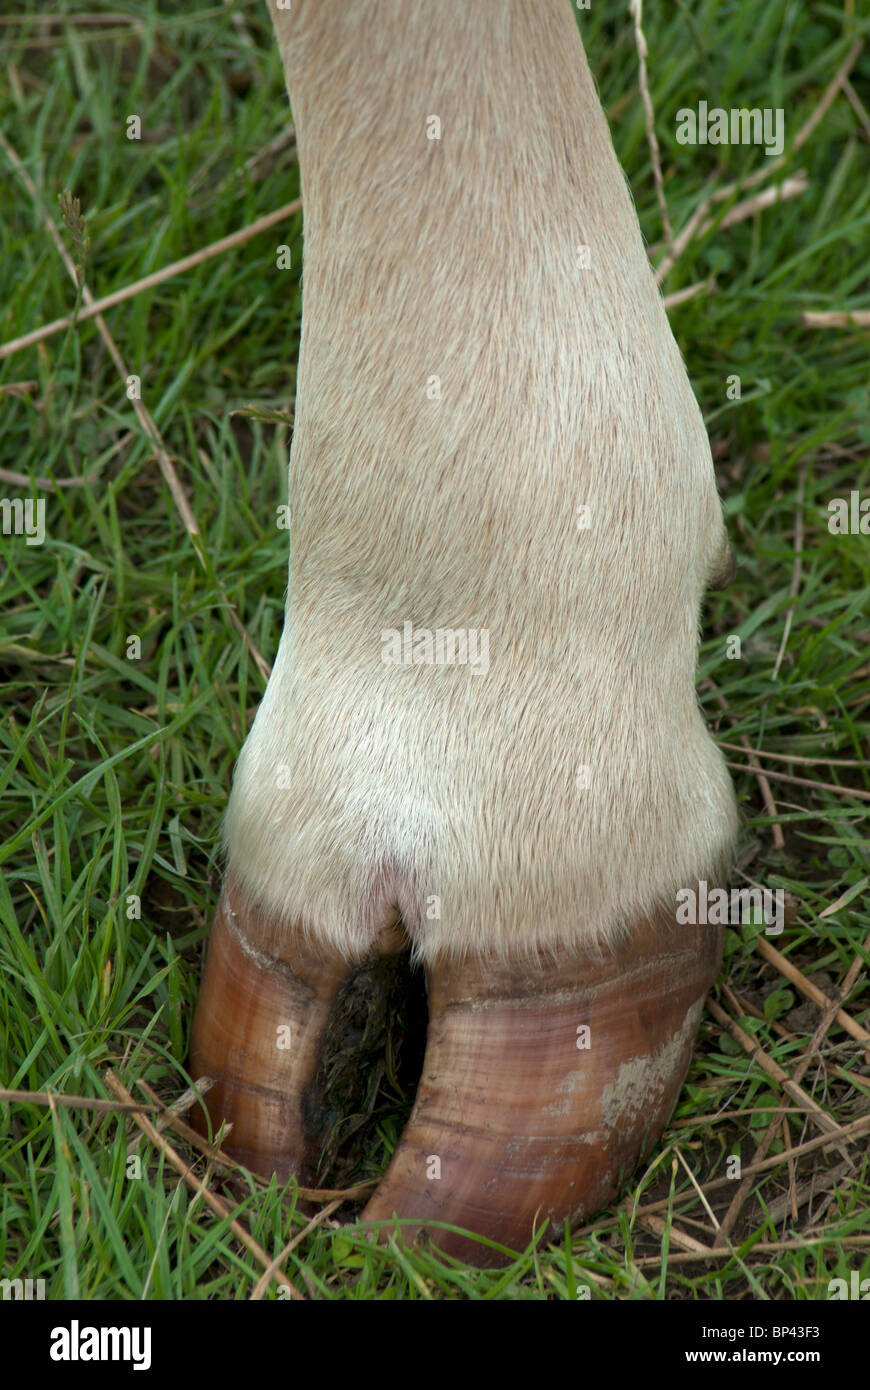 Zoccolo di mucca immagini e fotografie stock ad alta risoluzione - Alamy